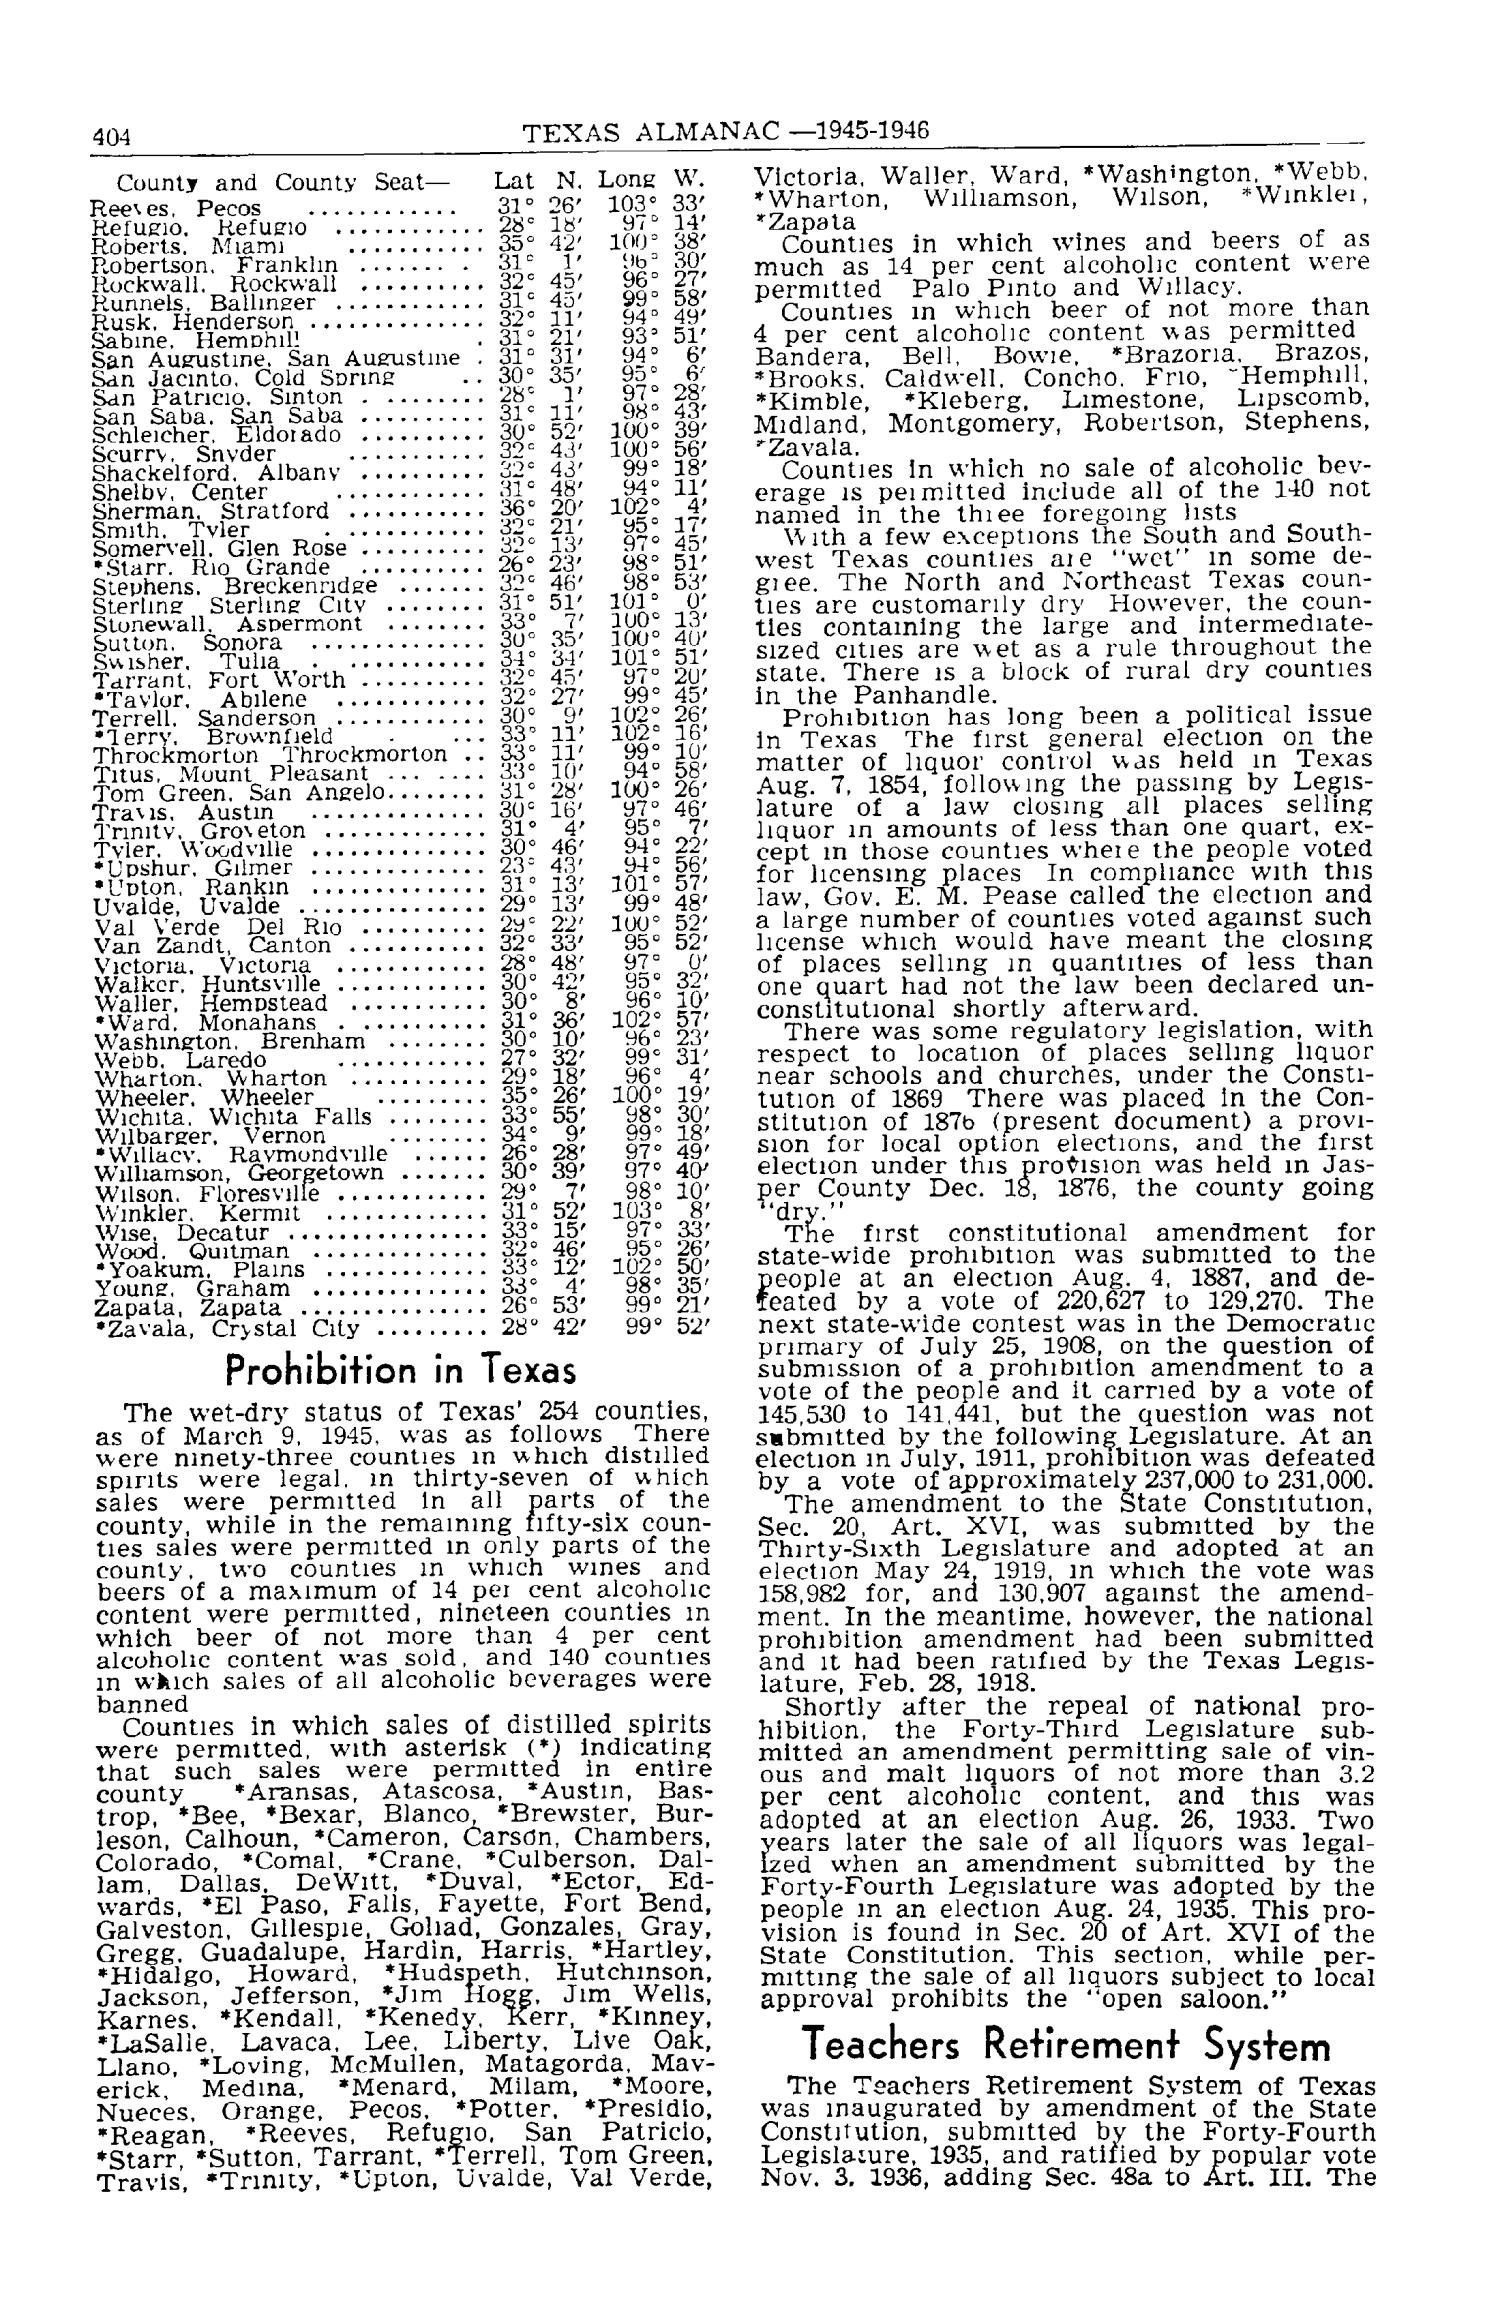 Texas Almanac, 1945-1946
                                                
                                                    404
                                                